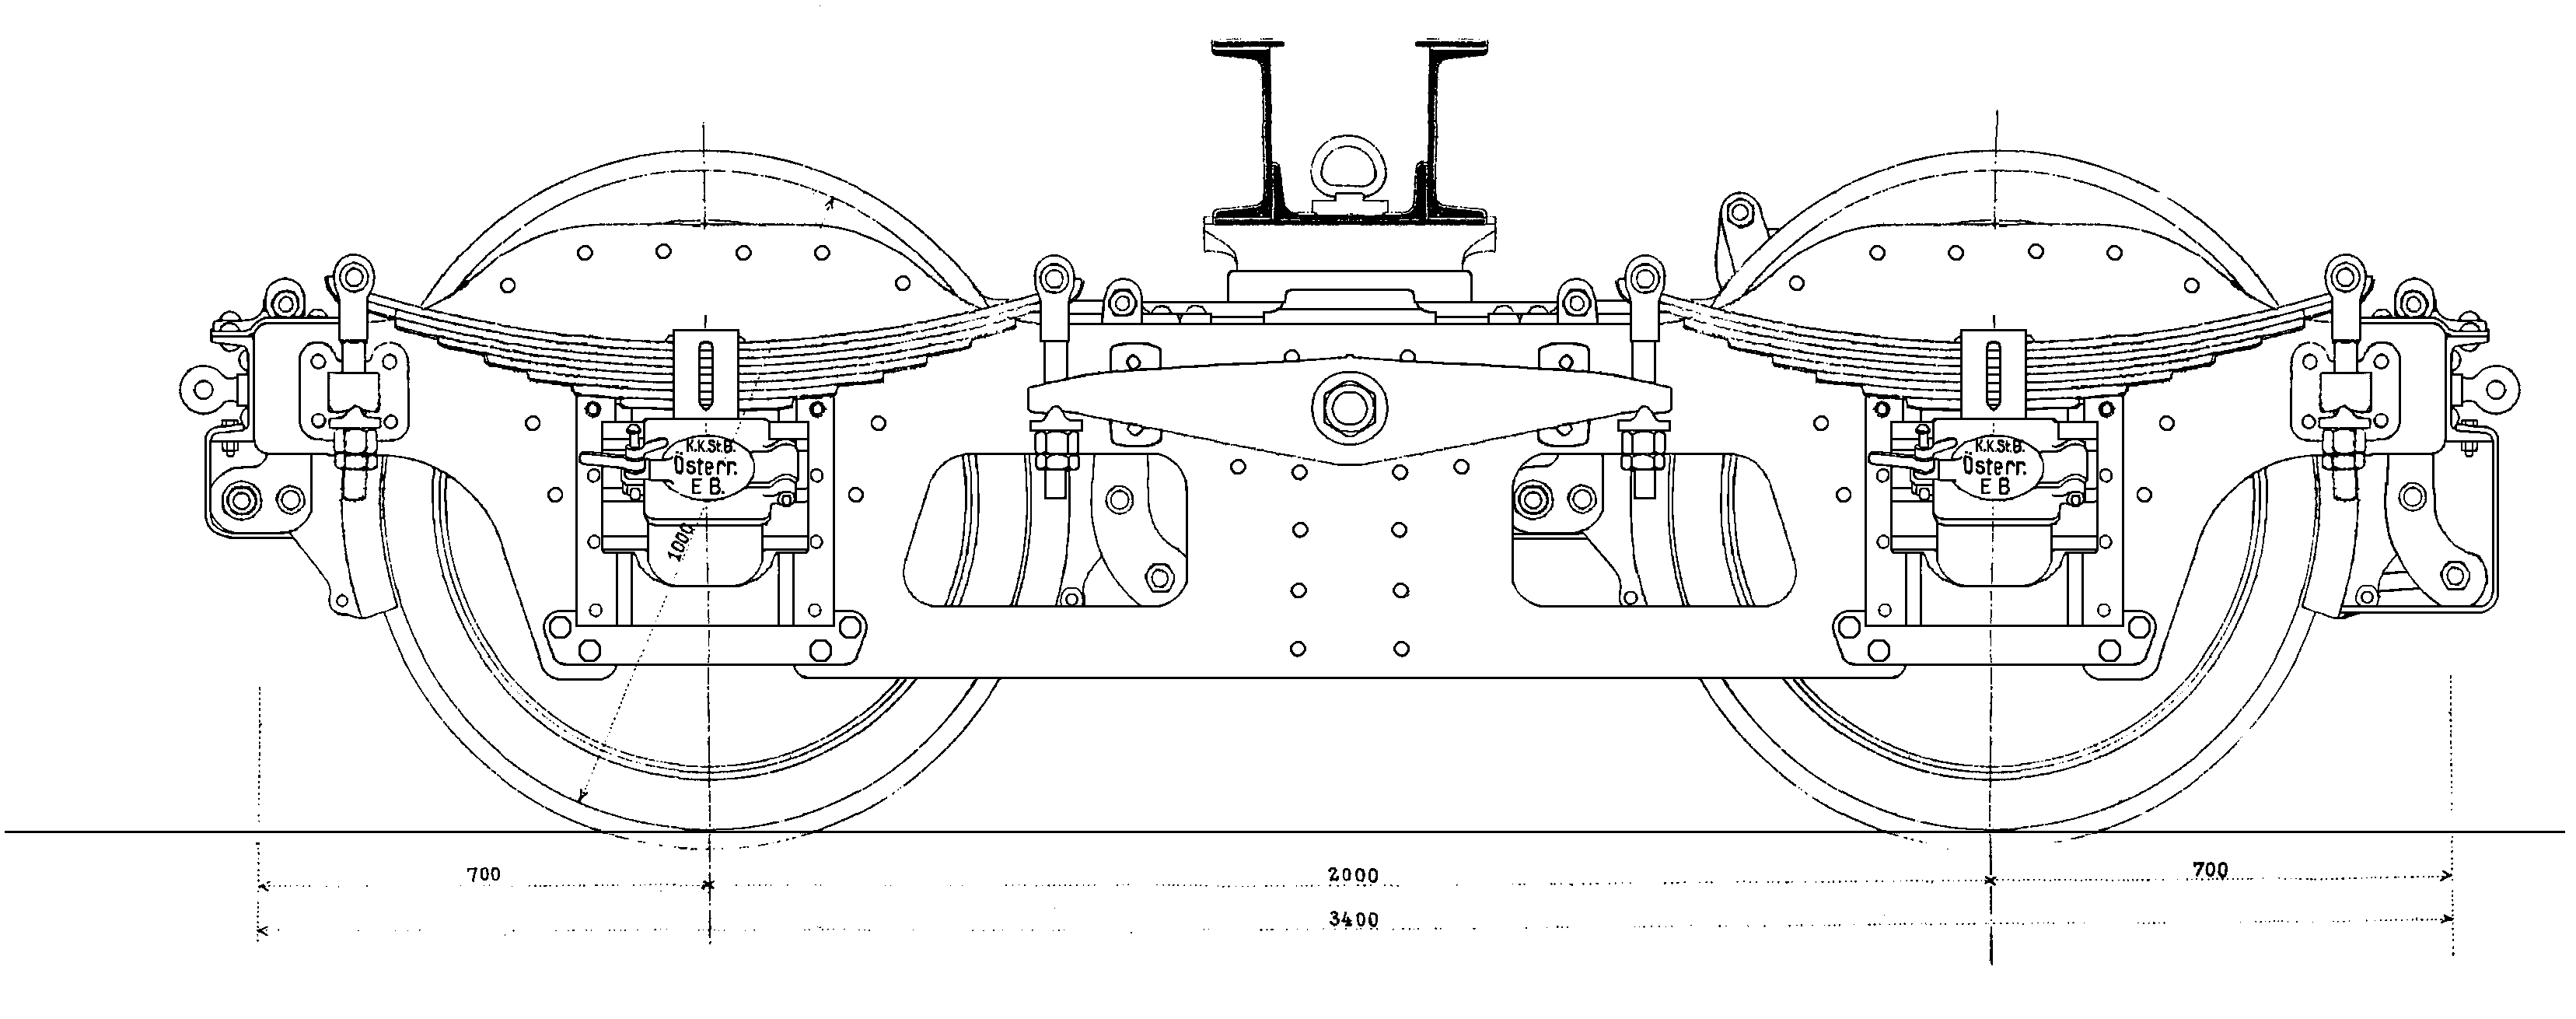 Skizze Pressblech-Drehgestell, genietet mit Ausgleichshebeln, Österreich 1910, nach Blatt VII g